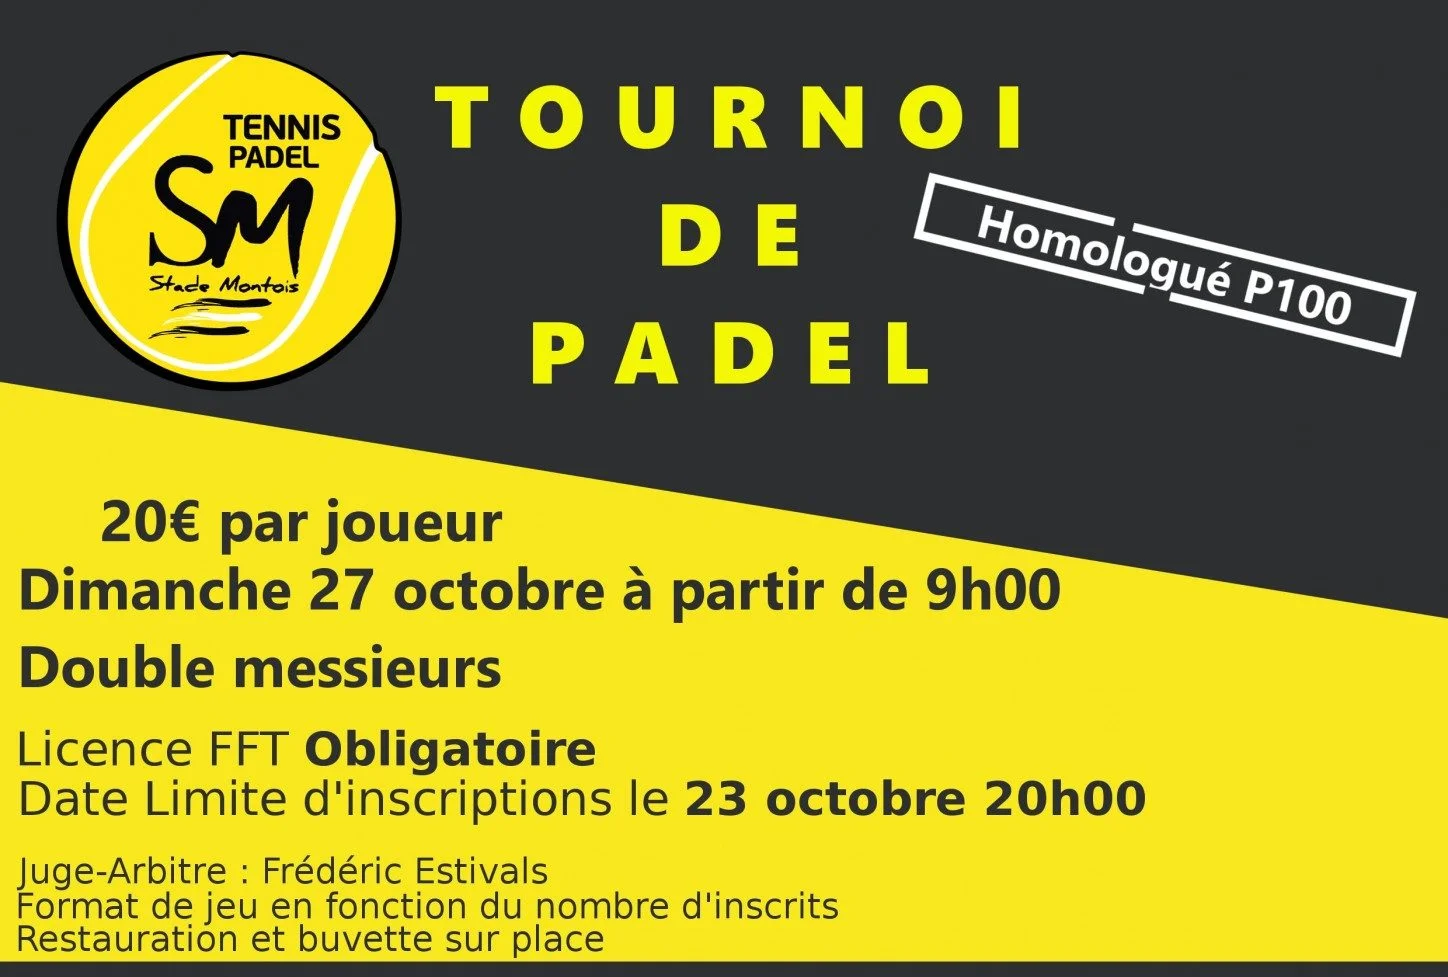 obert Padel Stade Montois - p100 homes - 27 d'octubre